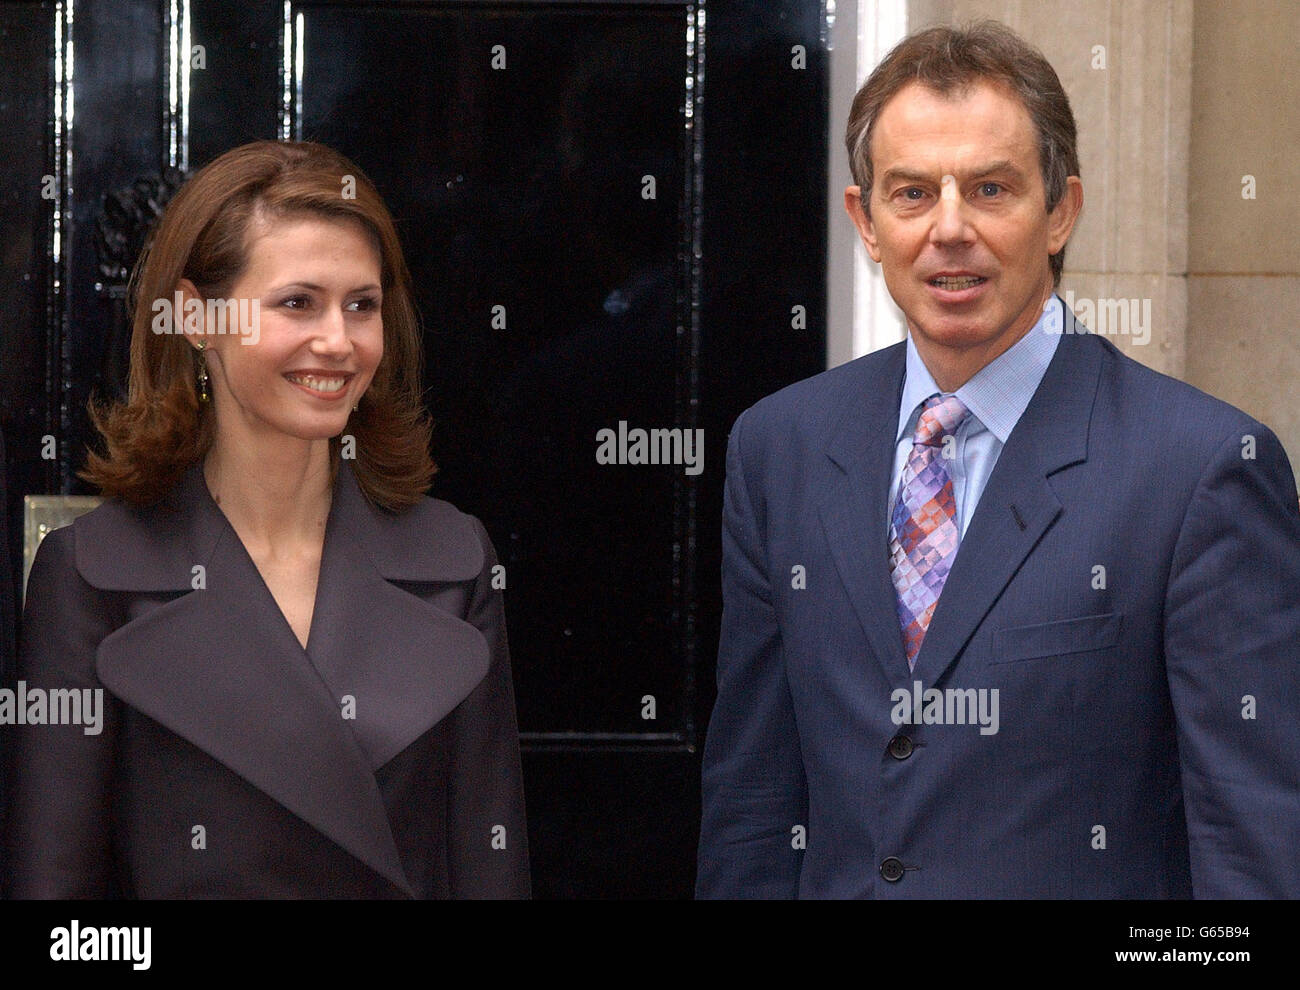 La First Lady siriana Asma al-Assad incontra il primo ministro britannico Tony Blair, alle porte di 10 Downing Street, Londra, prima di un incontro con il presidente siriano Bashar al-Assad. Foto Stock